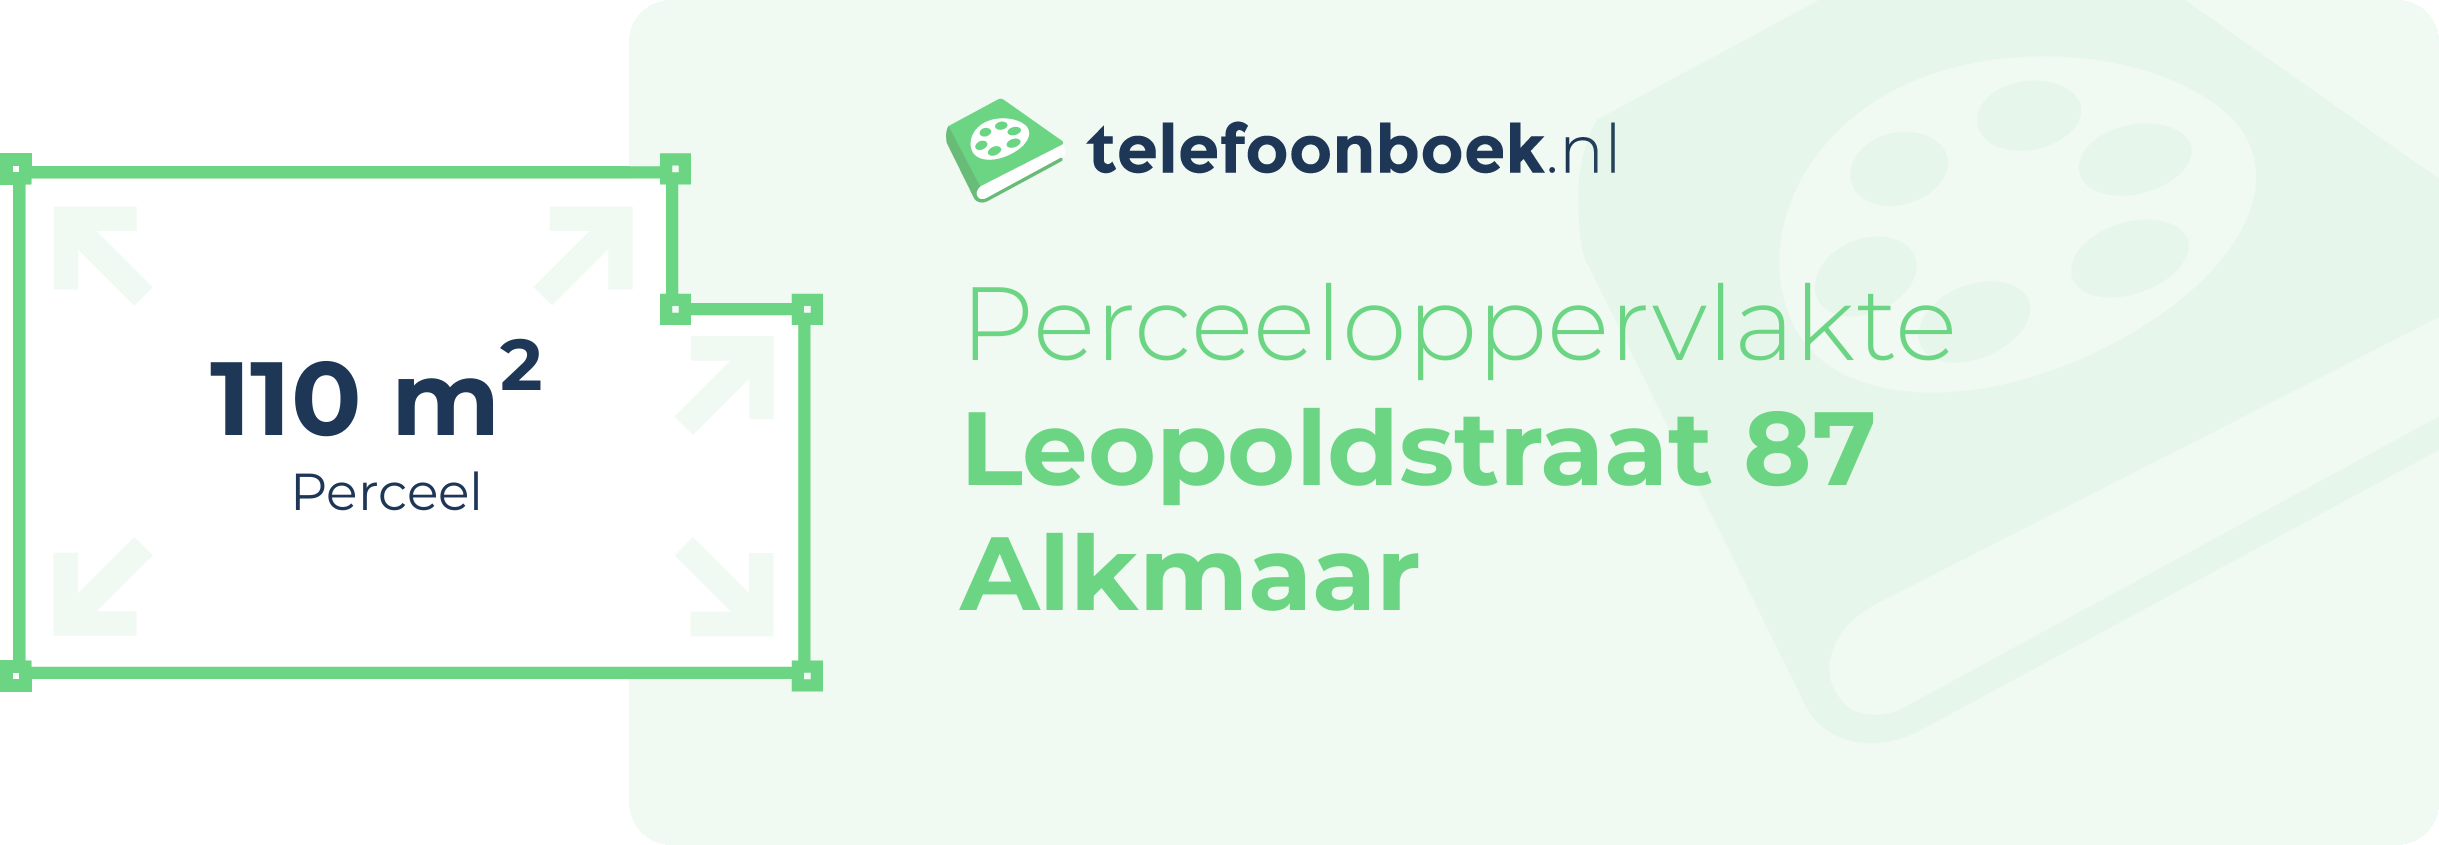 Perceeloppervlakte Leopoldstraat 87 Alkmaar